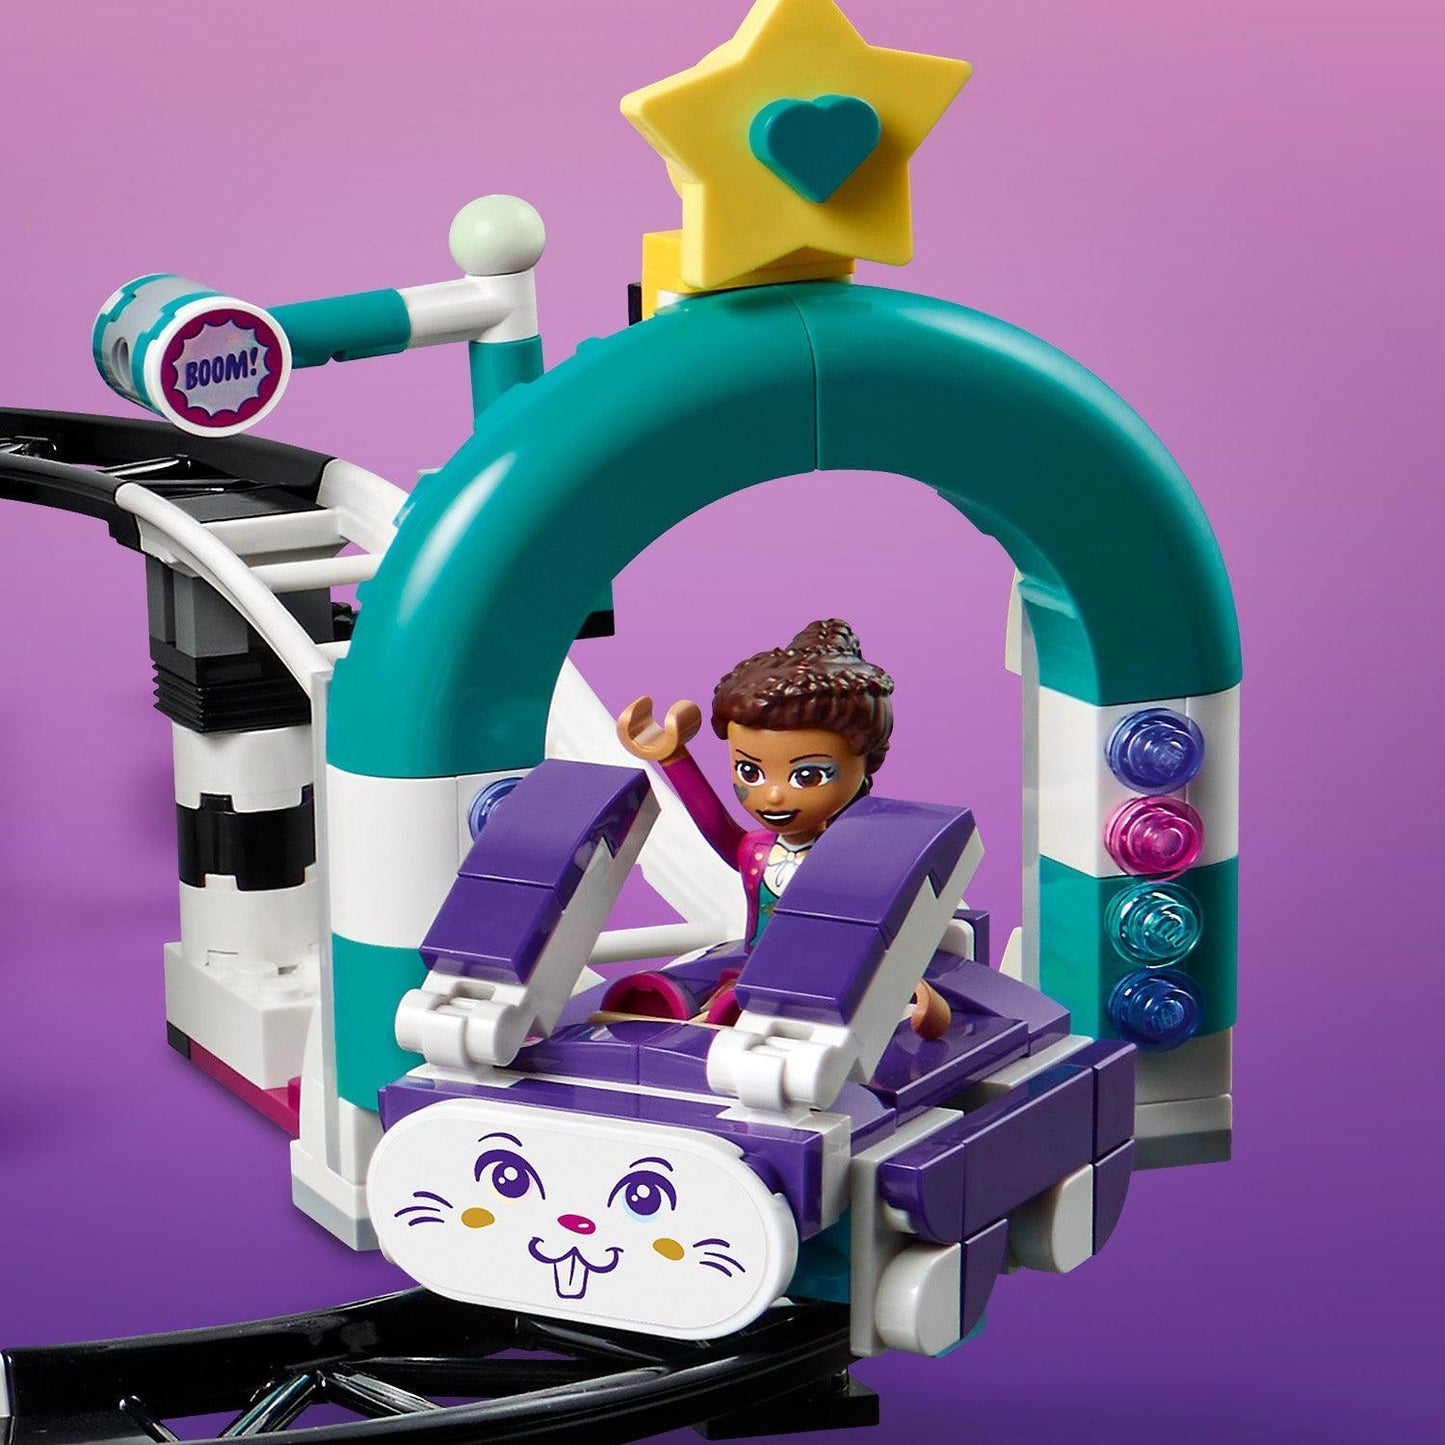 LEGO Magische kermis achtbaan 41685 Friends | 2TTOYS ✓ Official shop<br>